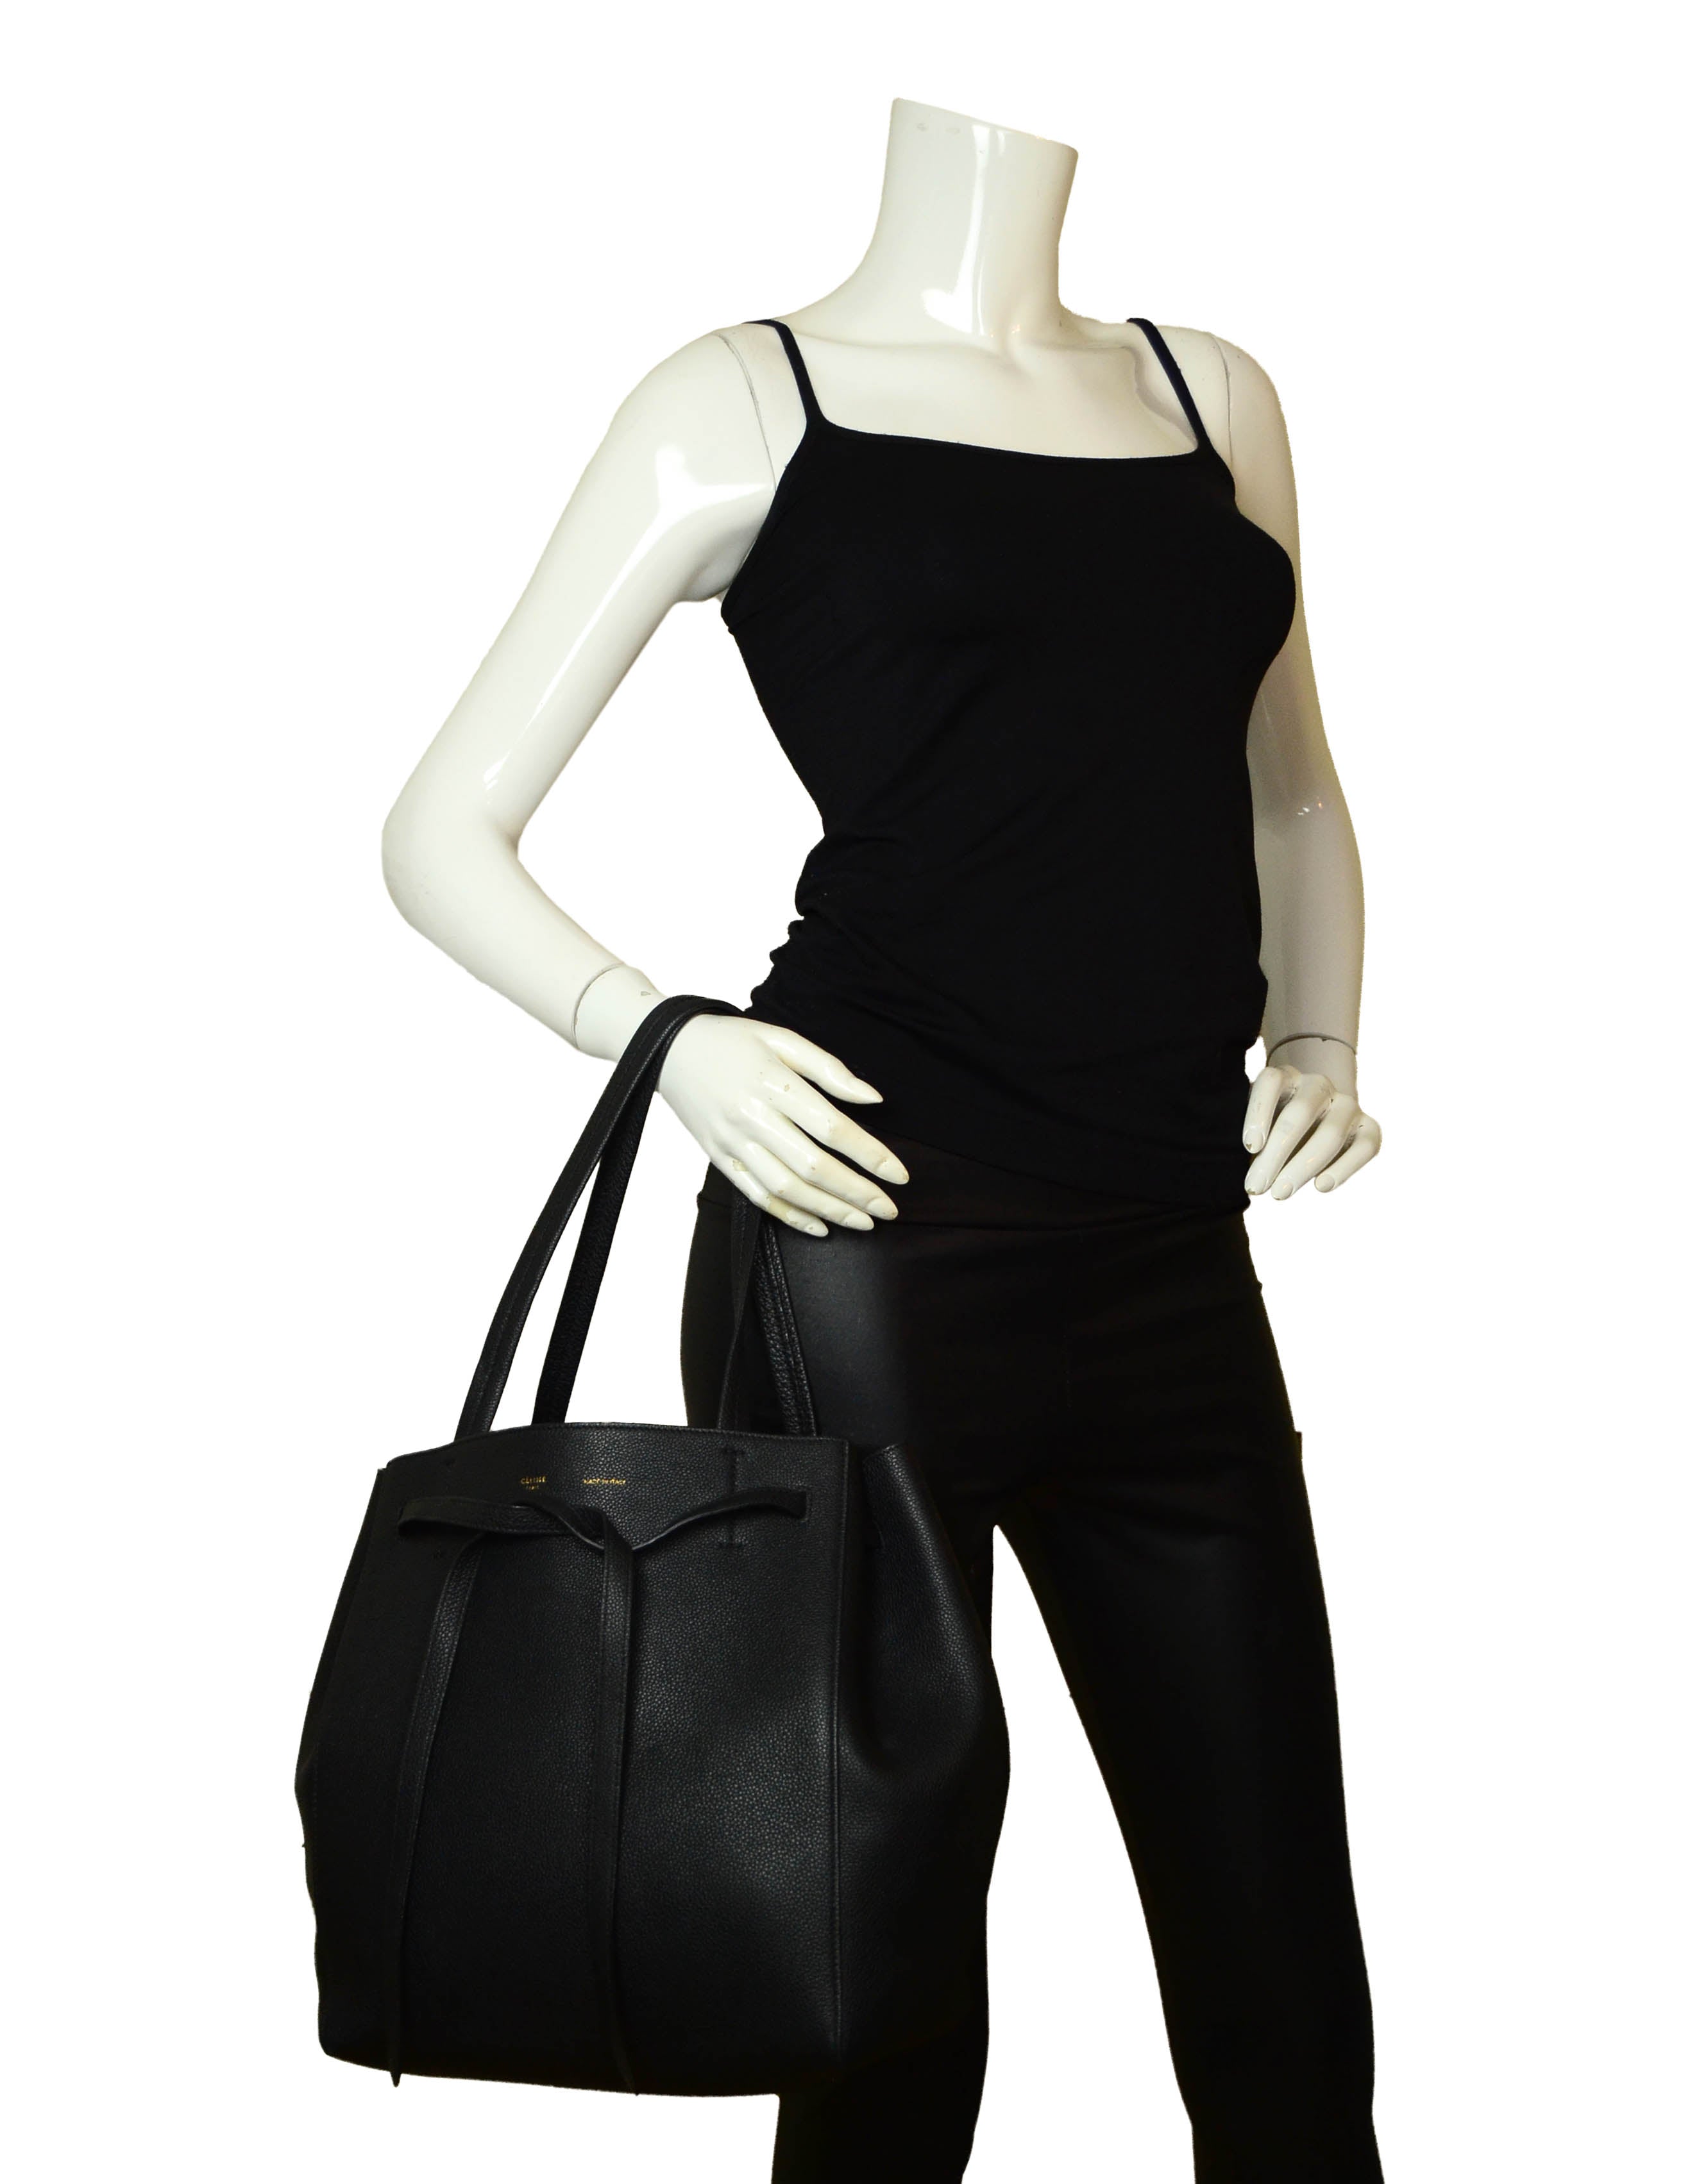 Celine Black Calfskin Leather Small Belt Cabas Phantom Tote Bag